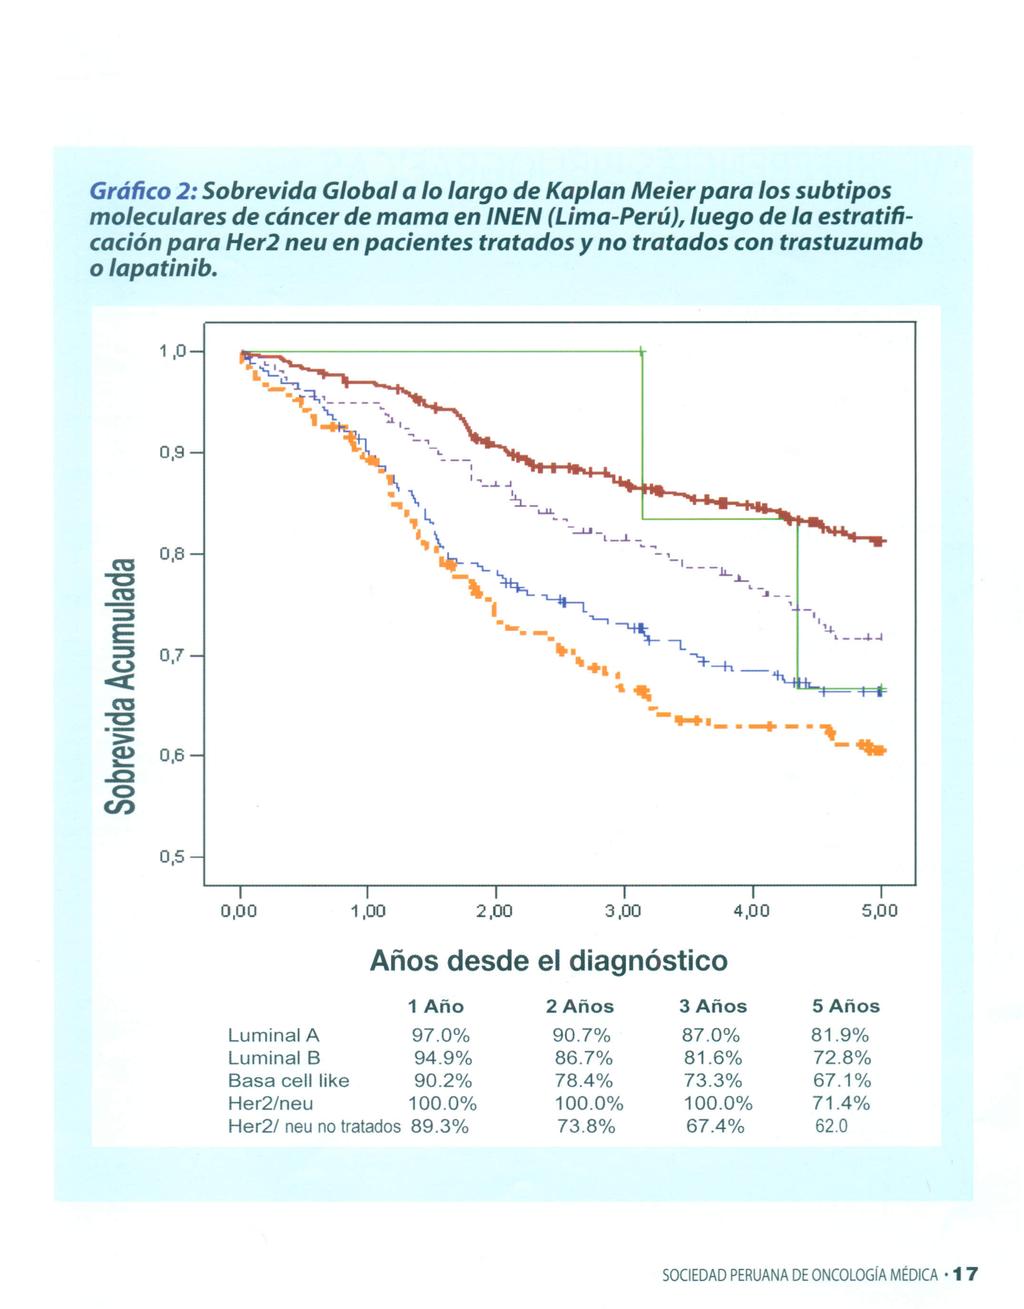 Gráfico 2: Sobrevida Global a lo largo de Kaplan Meier para los subtipos moleculares de cáncer de mama en INEN (Lima-Perú), luego de la estratificación para Her2 neu en pacientes tratados y no